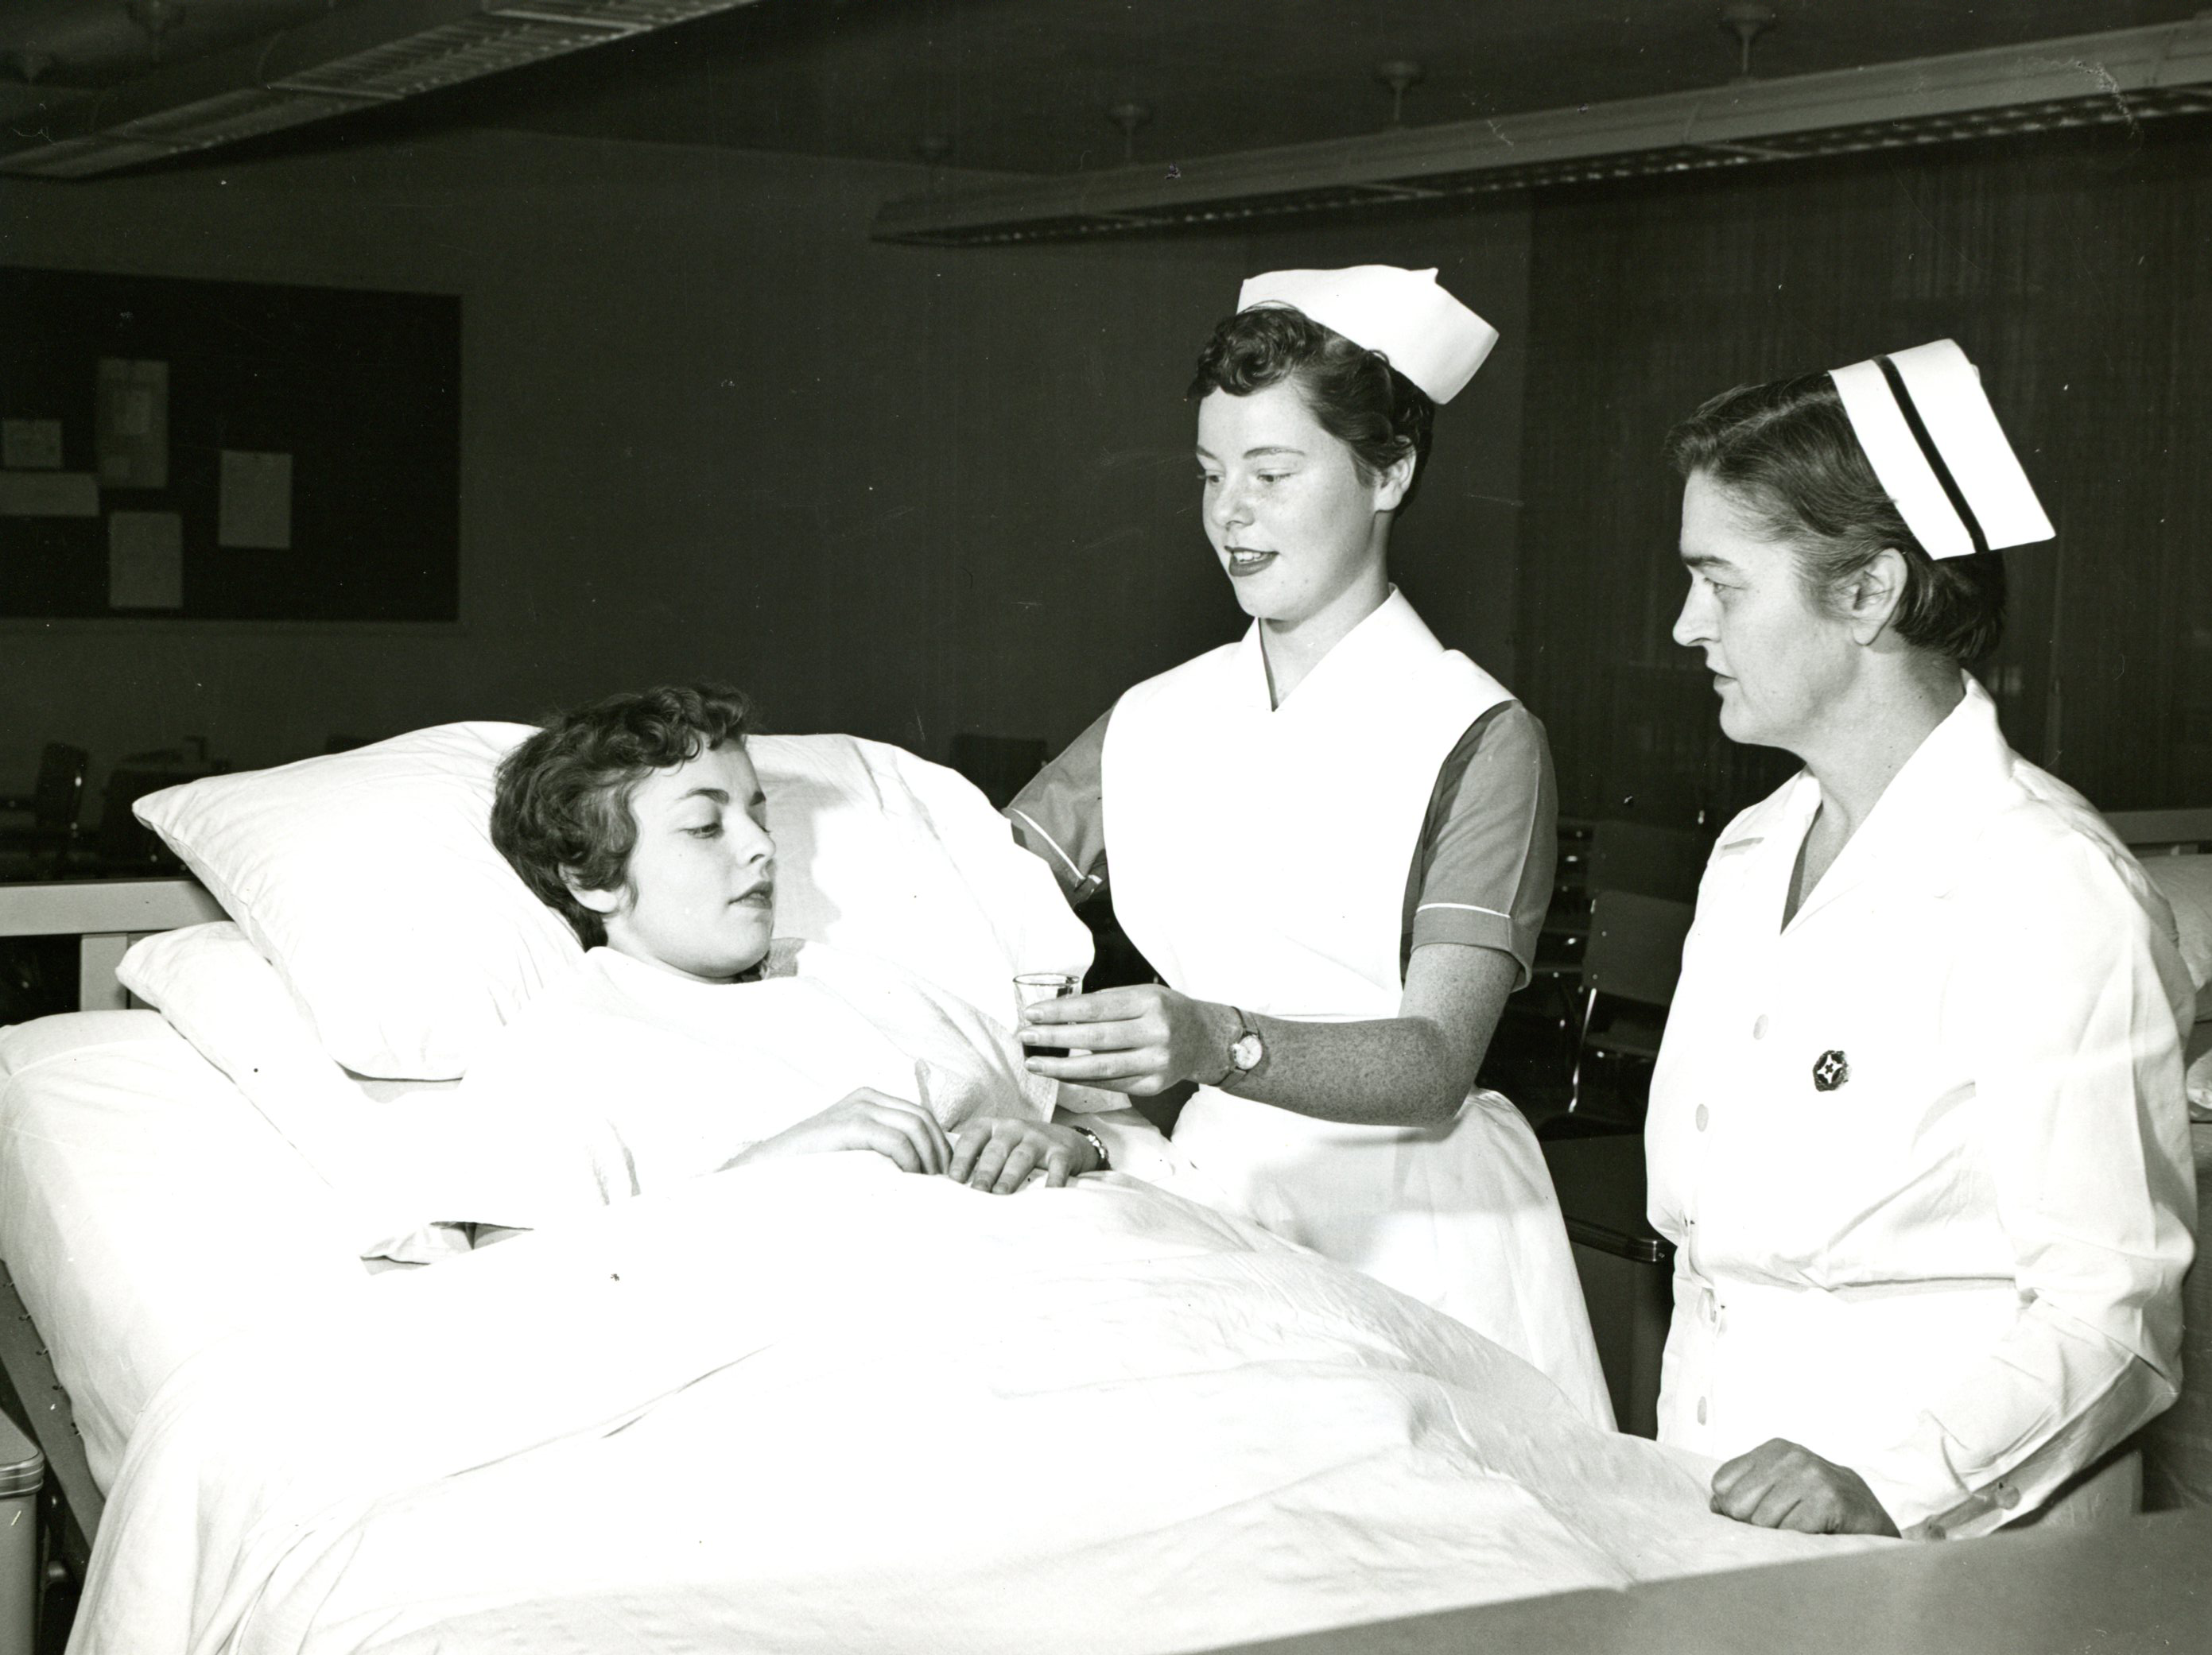 Une jeune femme en chemise d’hôpital se repose au lit pendant qu’une autre, vêtue d’un uniforme d’infirmière, lui tend un petit verre. Une autre femme portant un uniforme et une coiffe d’infirmière observe.